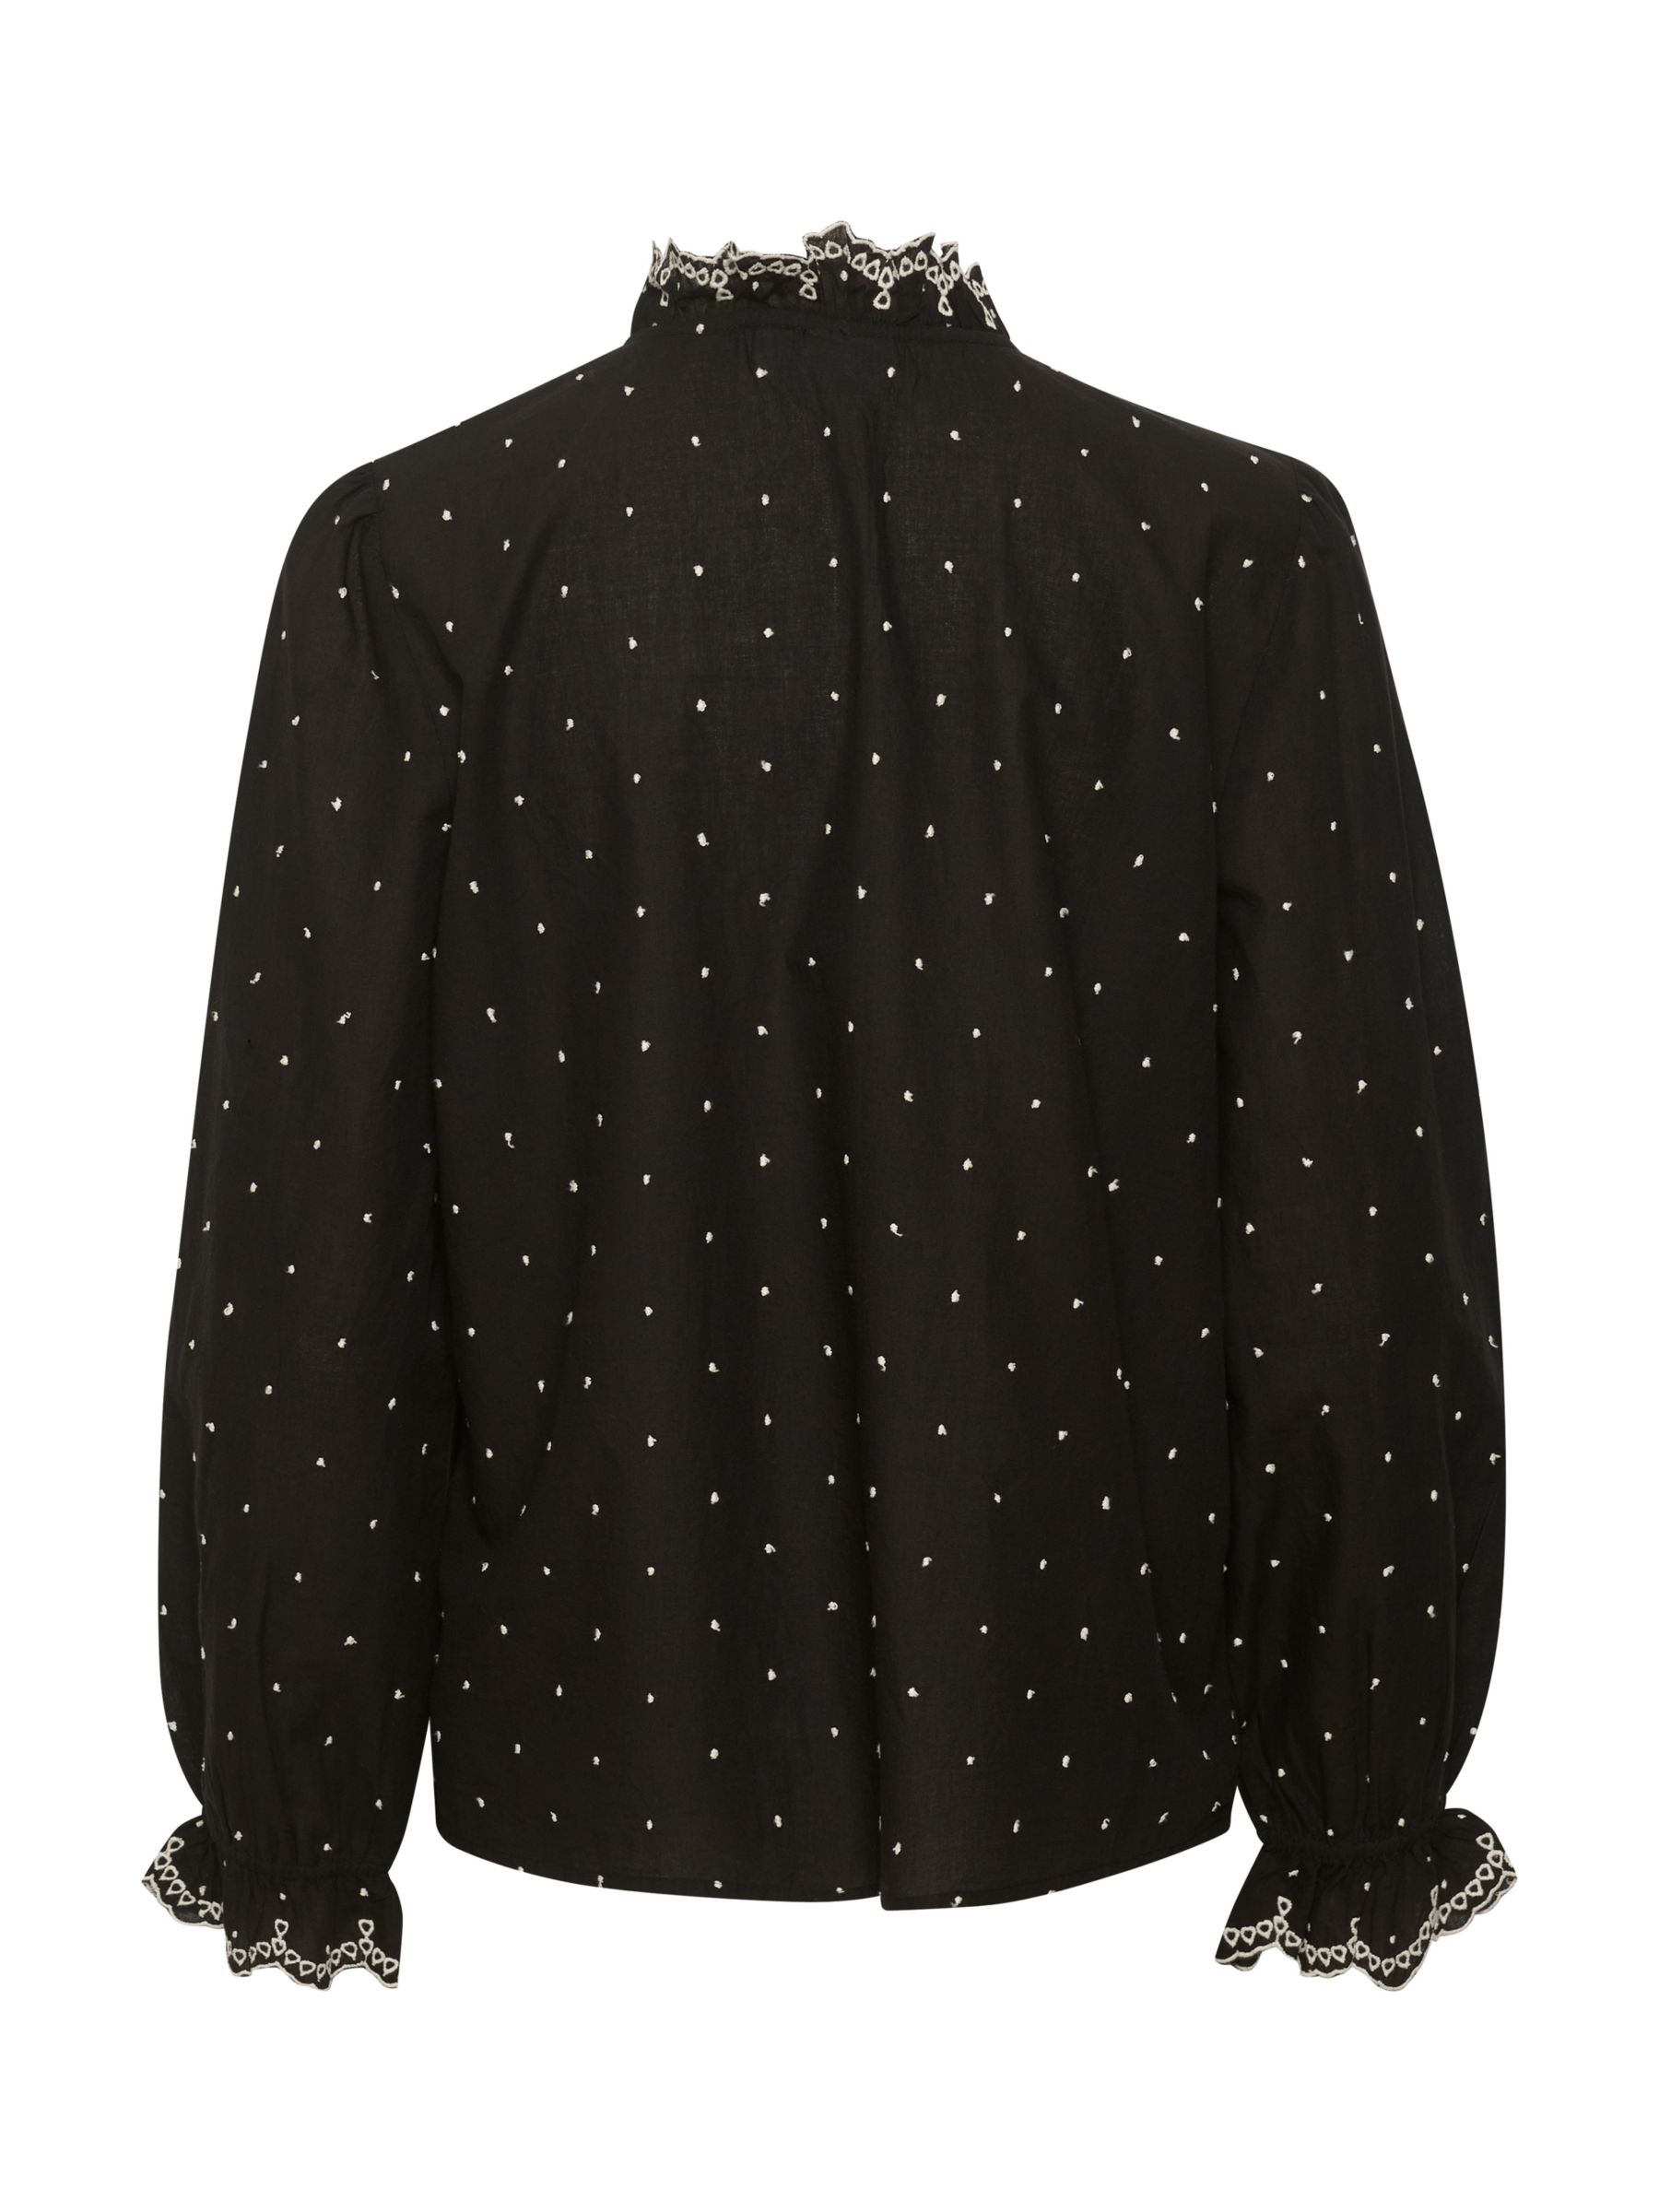 Buy Saint Tropez Tabea Shirt, Black Online at johnlewis.com